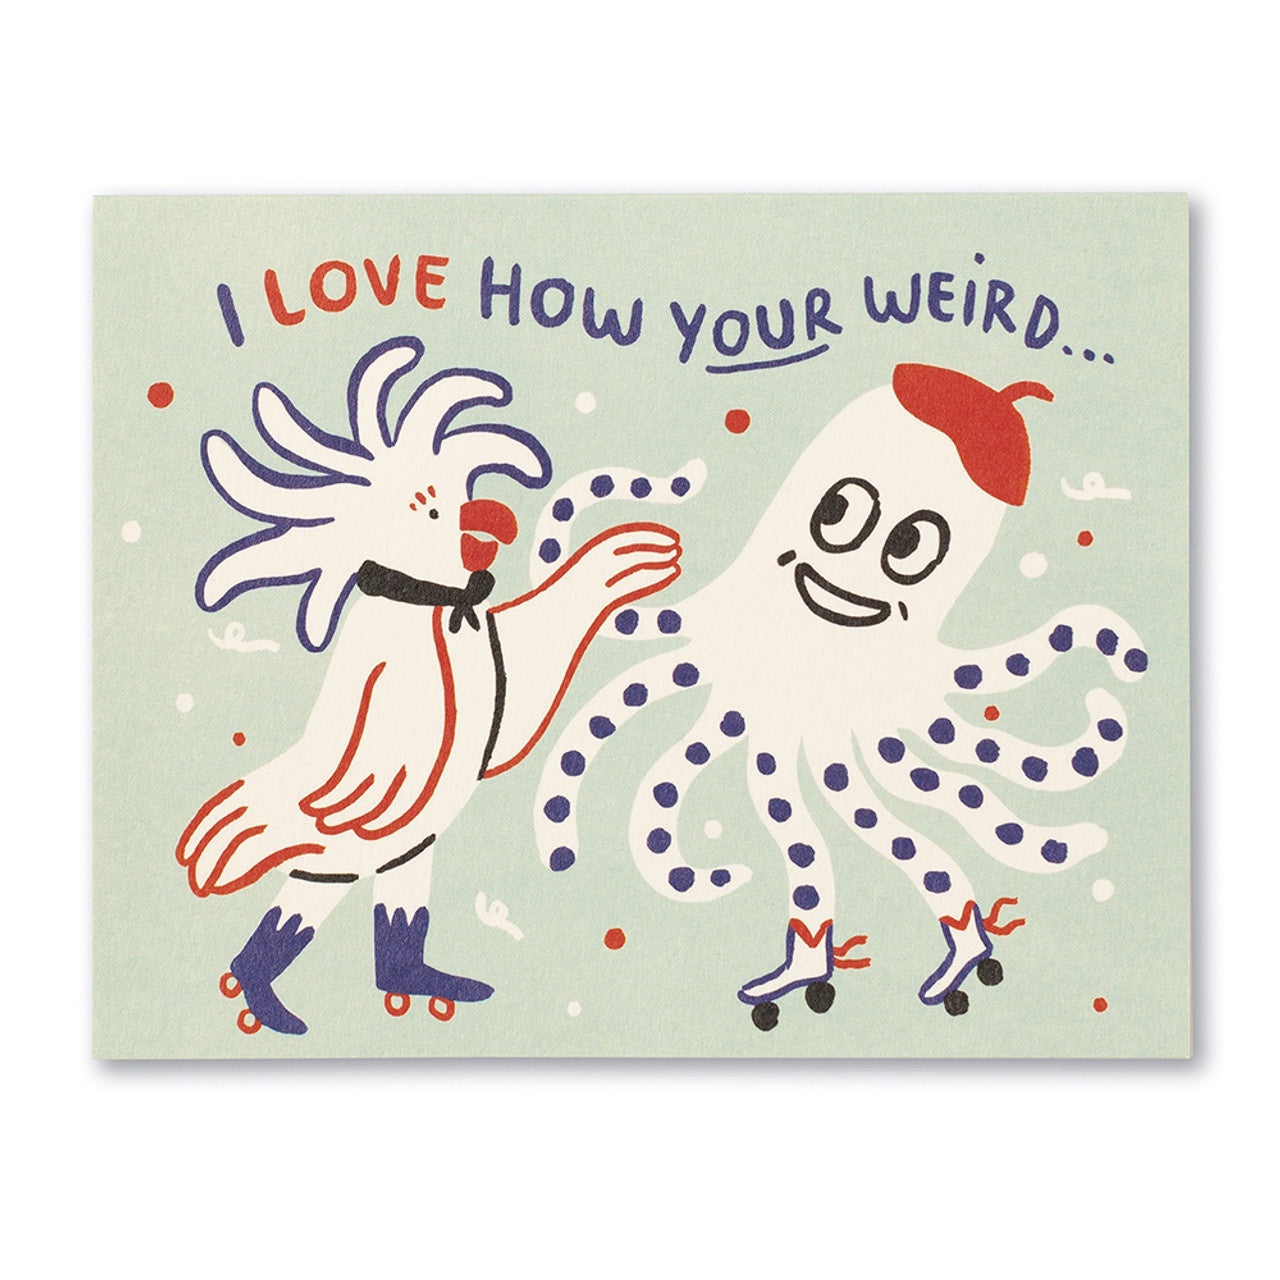 I Love How Your Weird Card